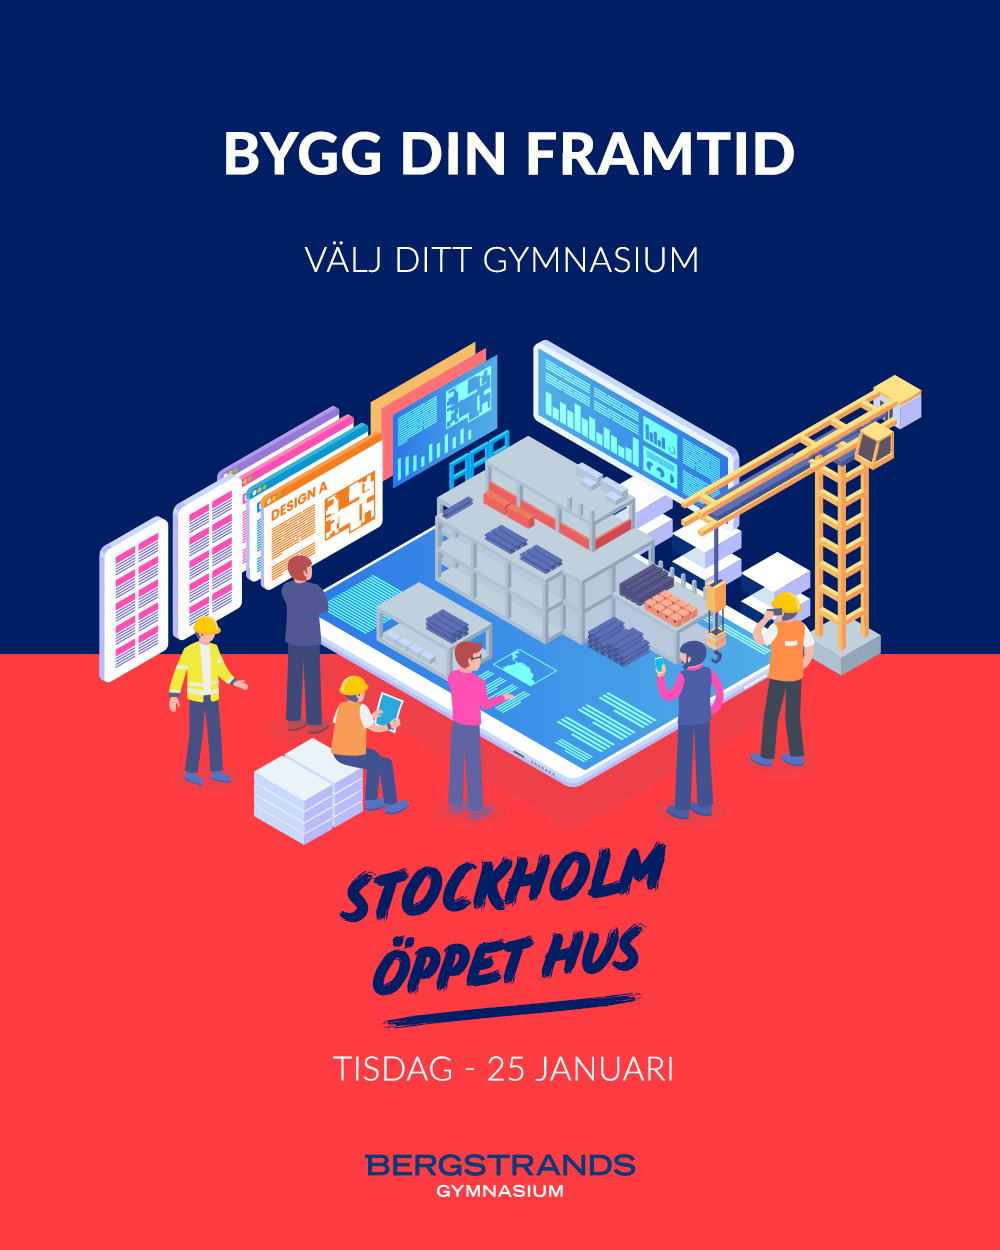 Affisch i rött och blått med texten Bygg din framtid. Stockholm öppet hus Tisdag - 25 Januari